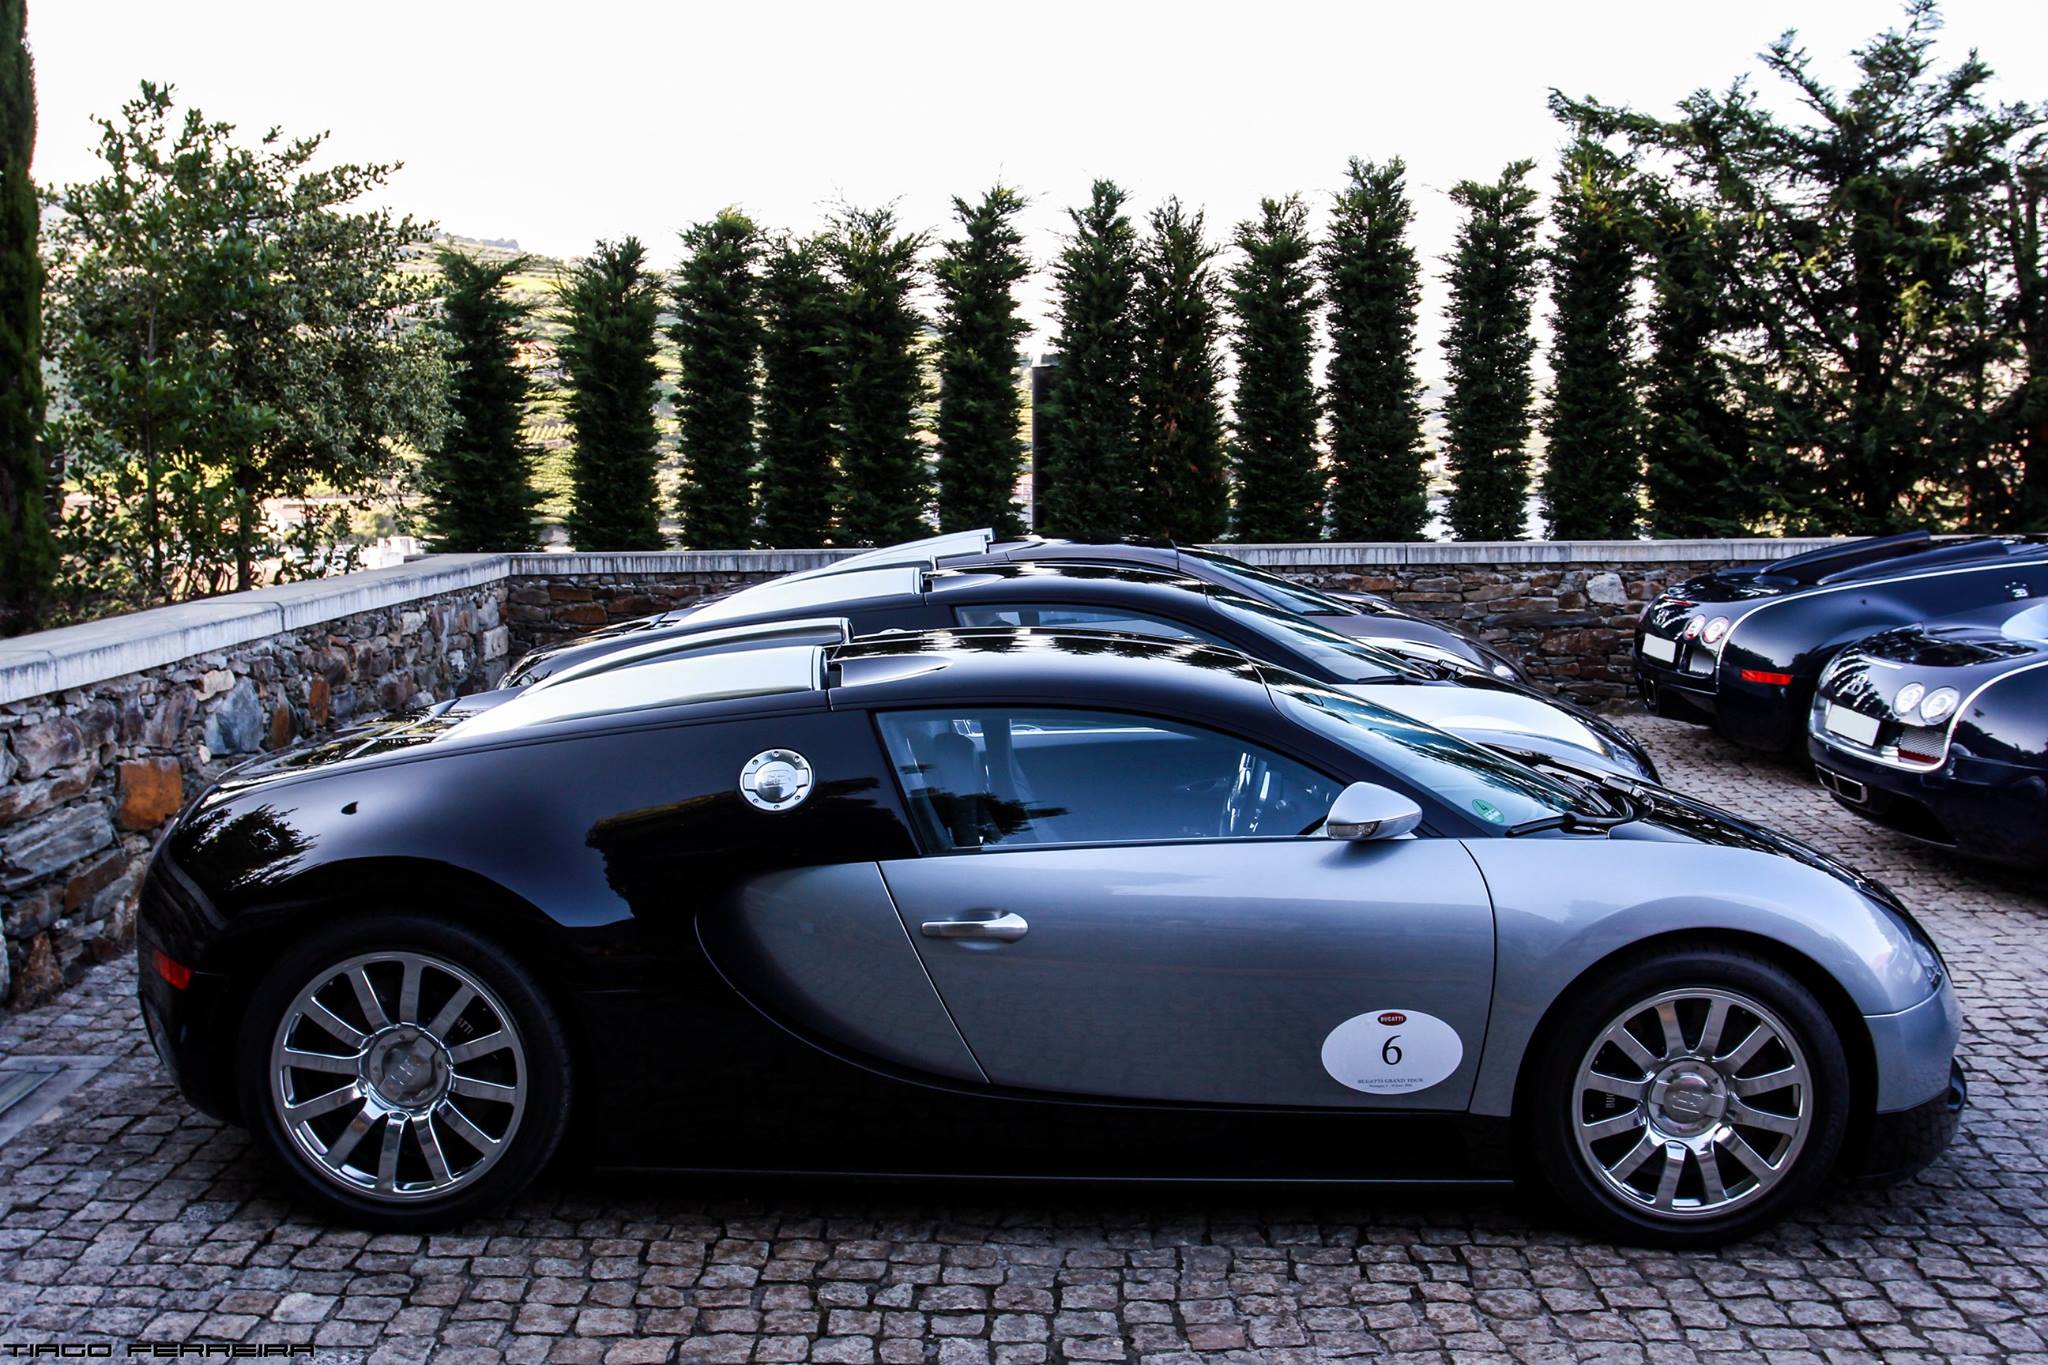 
Trên toàn thế giới chỉ có 450 chiếc Bugatti Veyron được xuất xưởng, sau đó phiên bản Chiron kế nhiệm được lên dây chuyển sản xuất. Mức giá bán cho một chiếc Bugatti Veyron bản tiêu chuẩn vào khoảng 1,3 triệu USD.
